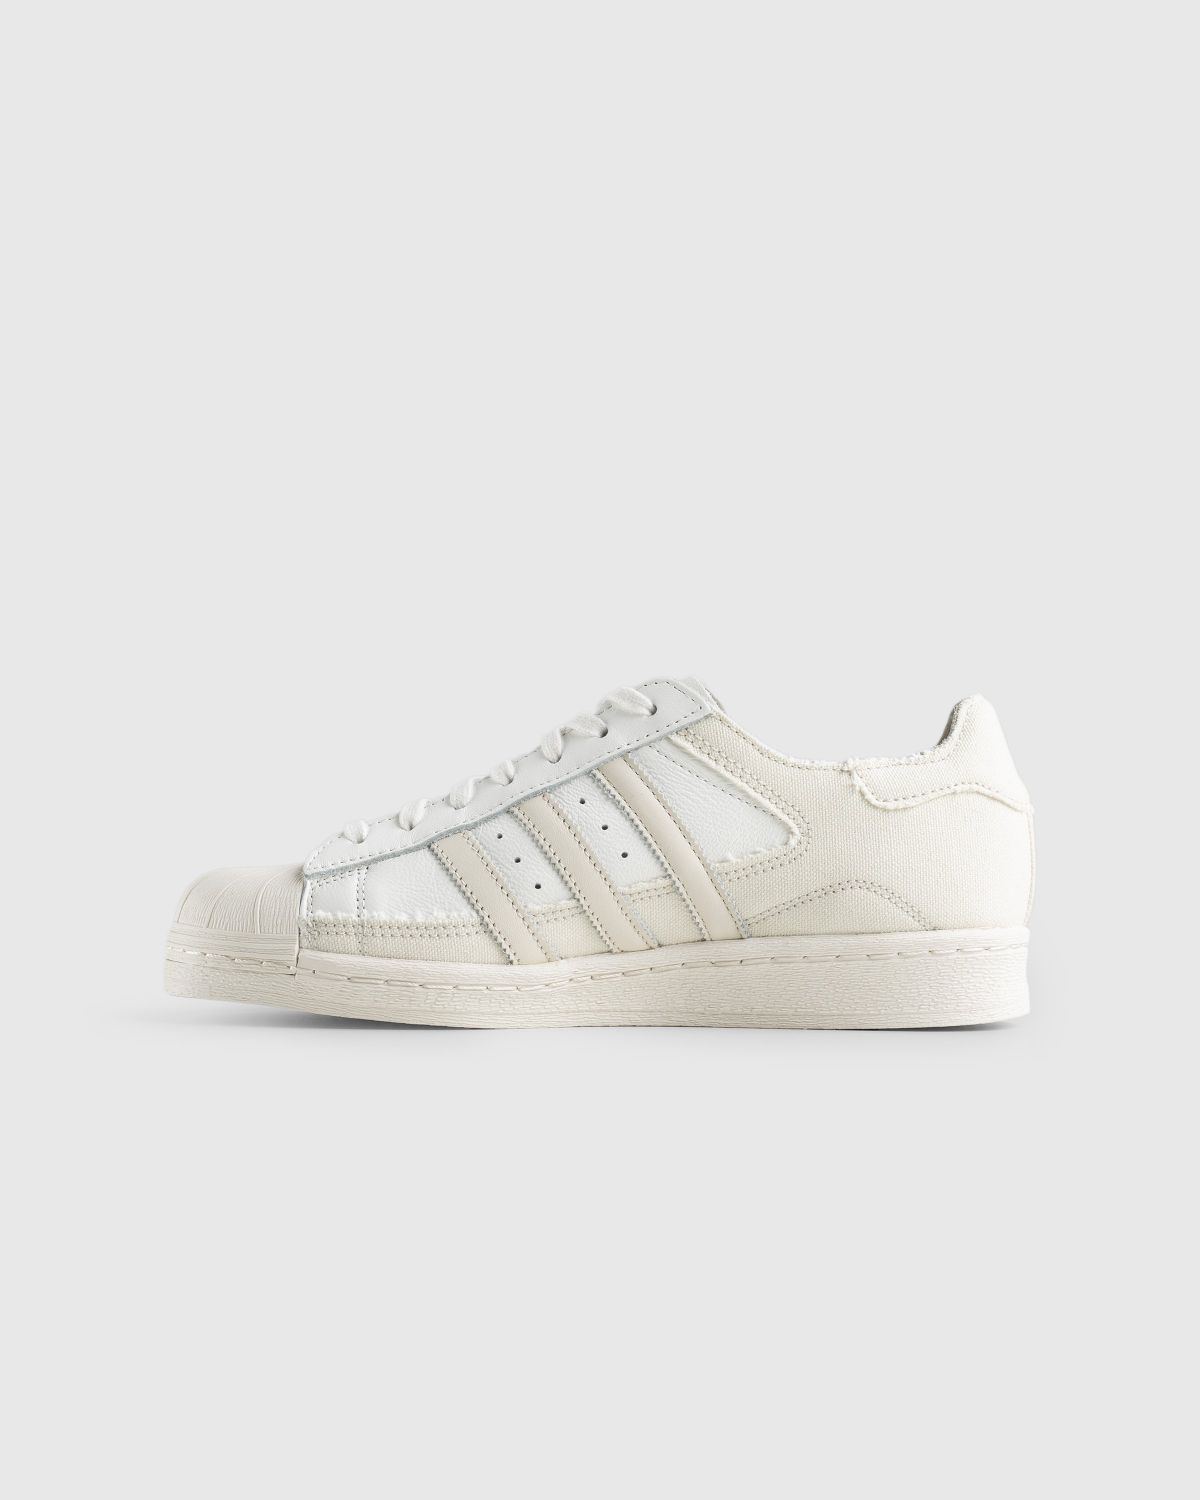 Adidas – 82 White/Beige | Highsnobiety Shop